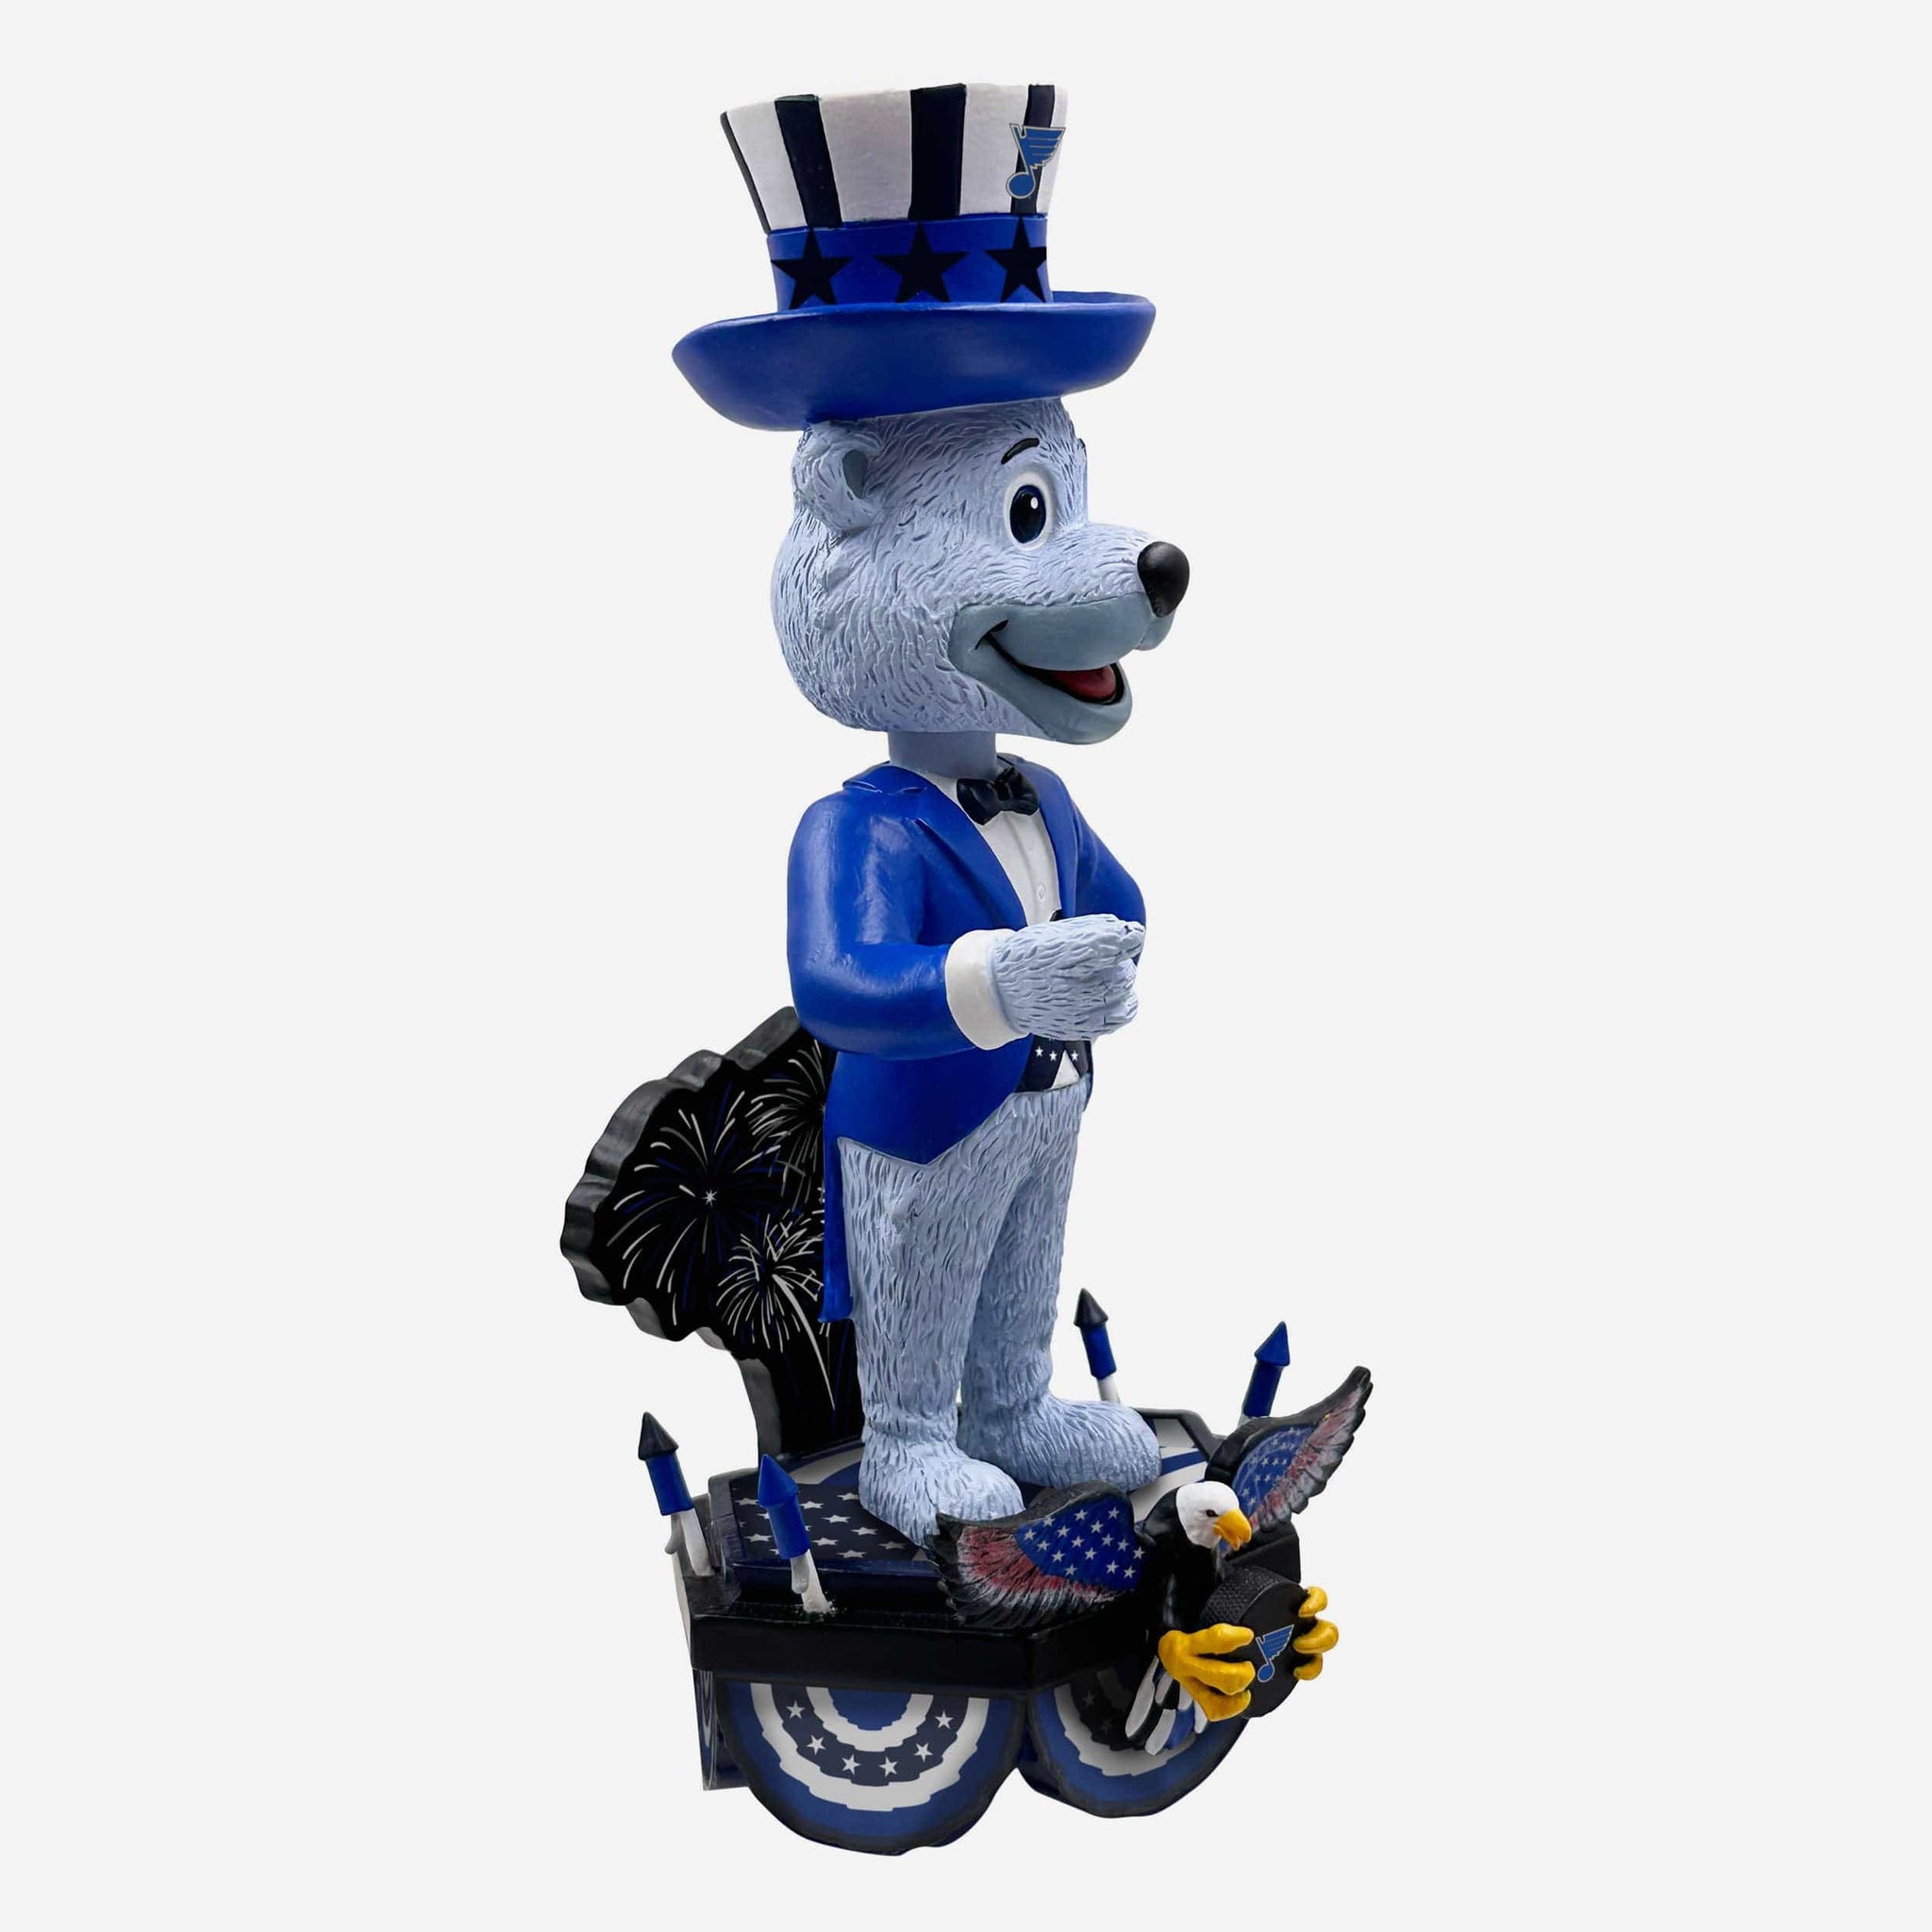 Saint Louis Blues Mascot Louie Ornament